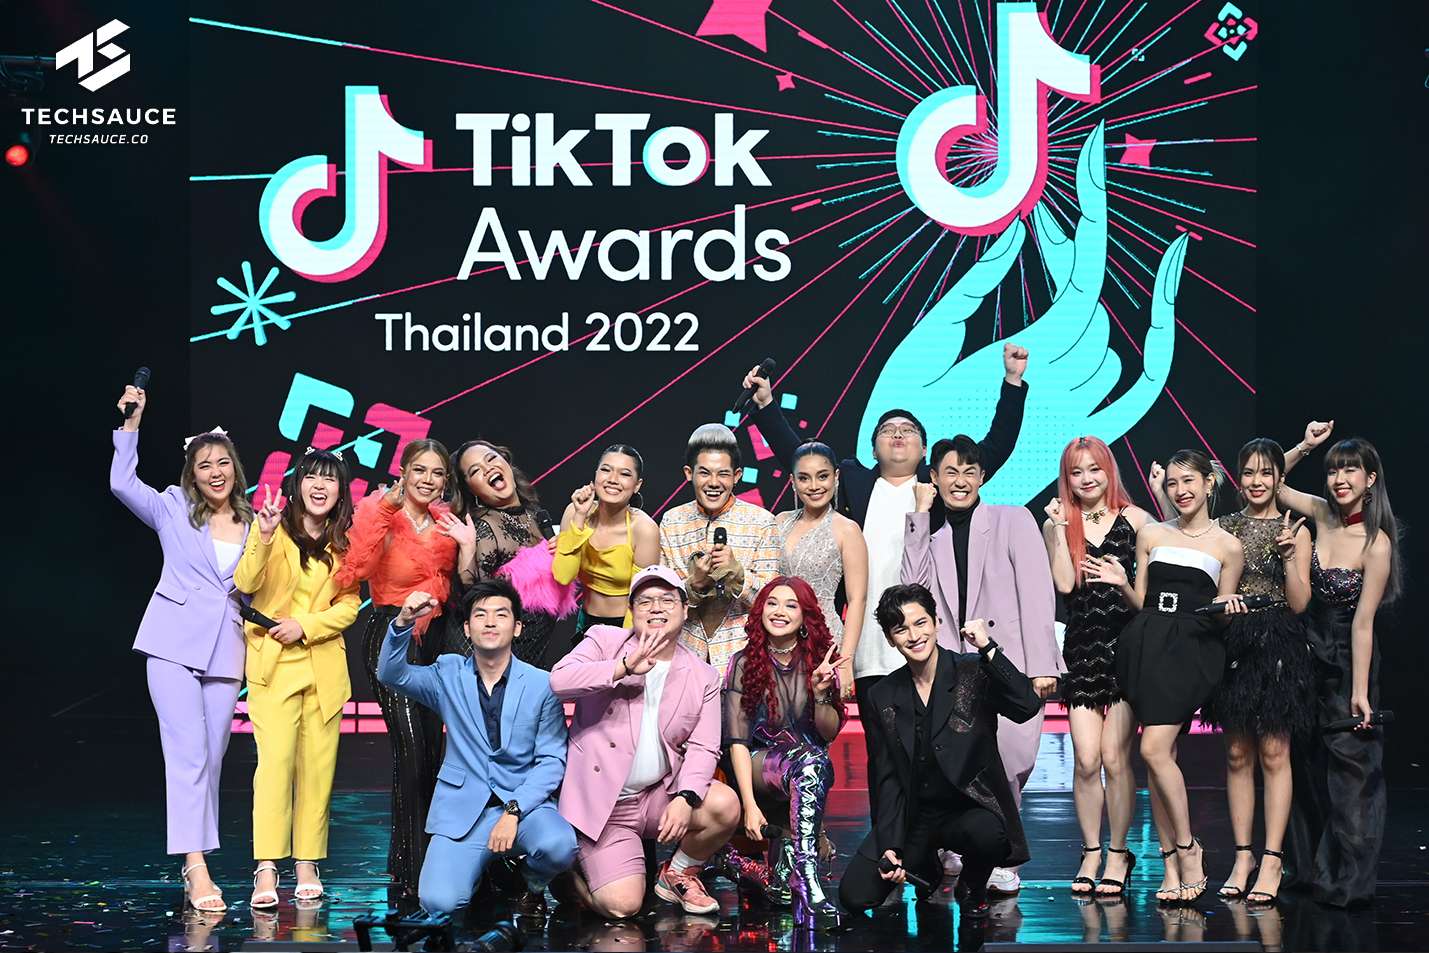 ครั้งแรกกับงานมอบรางวัลสุดยิ่งใหญ่ TikTok Awards Thailand 2022 ยกระดับค